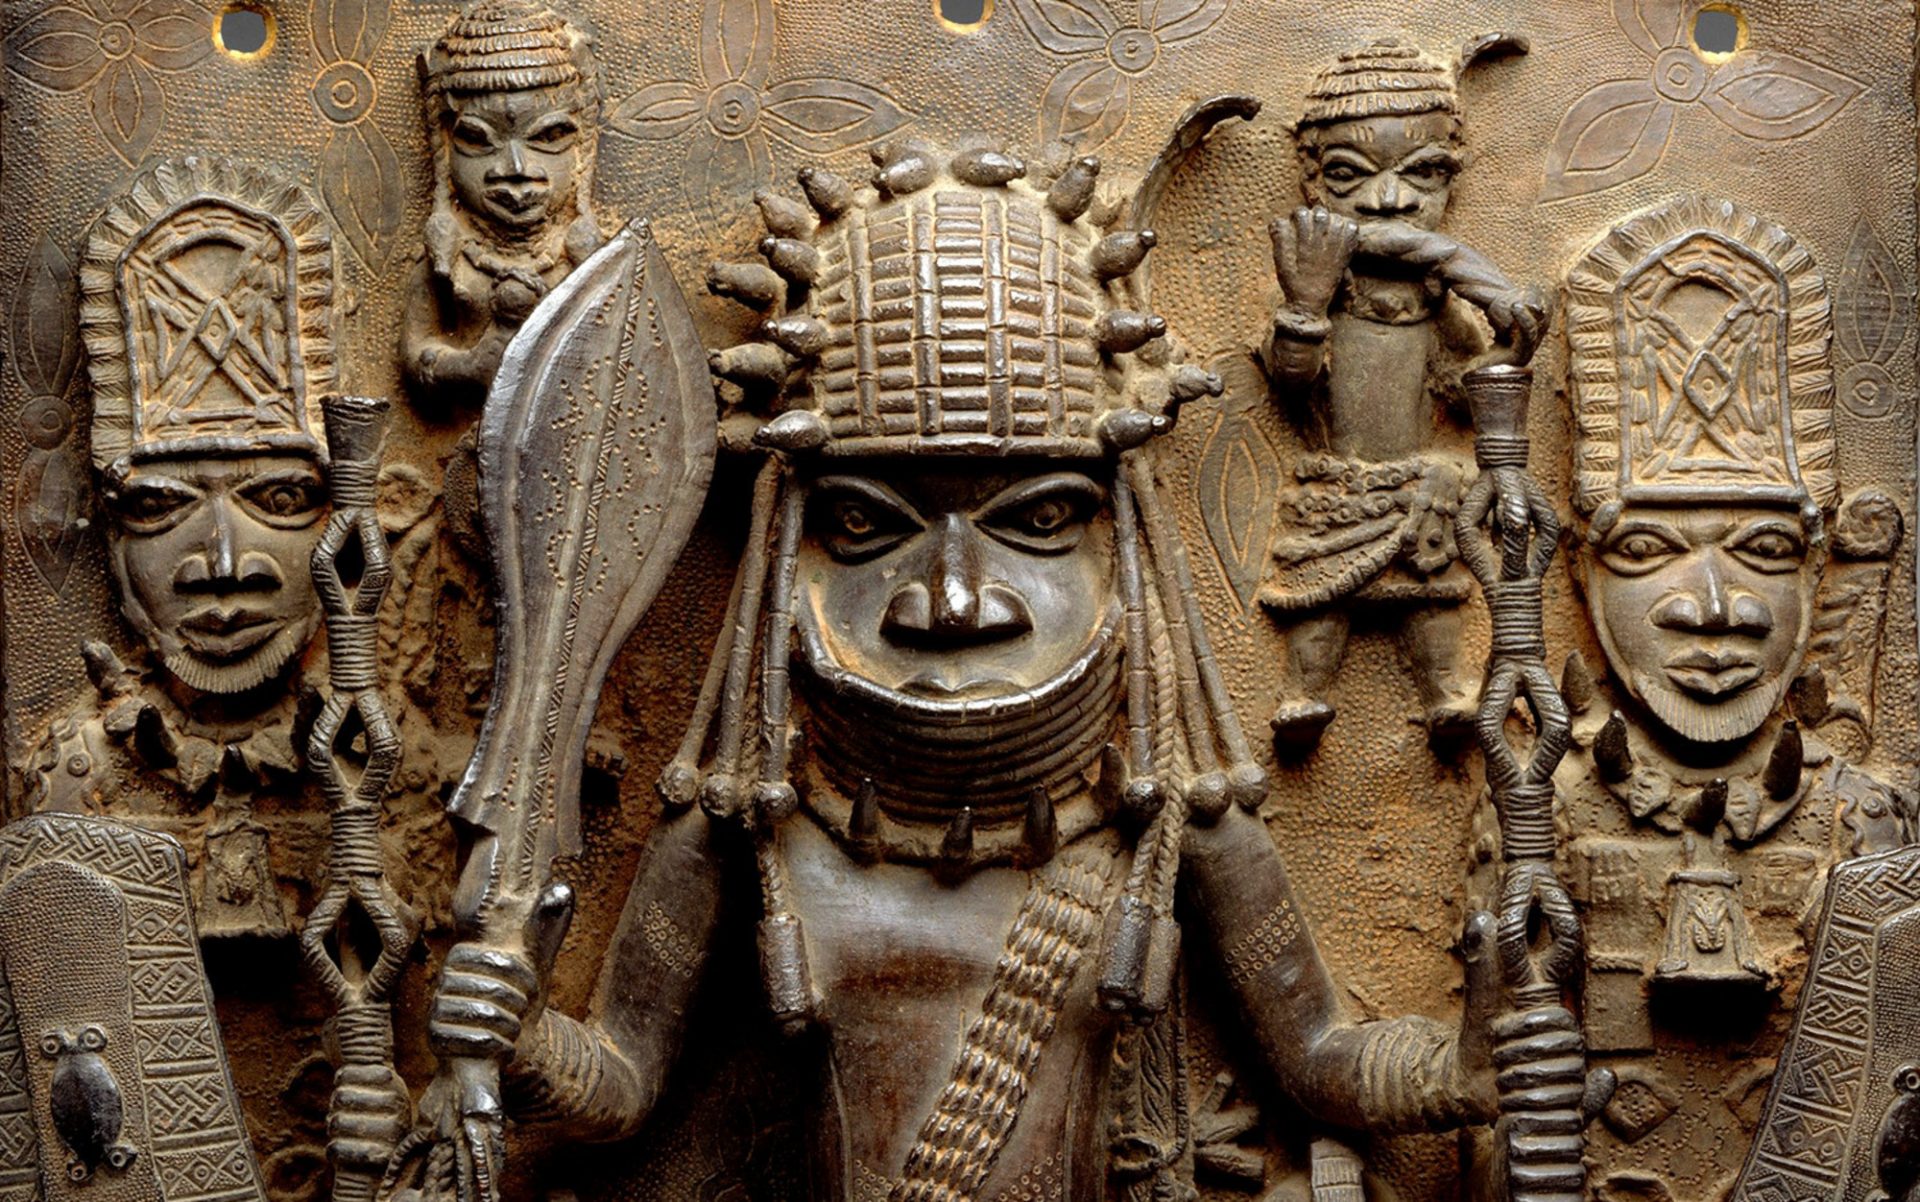 5 tribal men facing forward, depicted through bronze artwork 